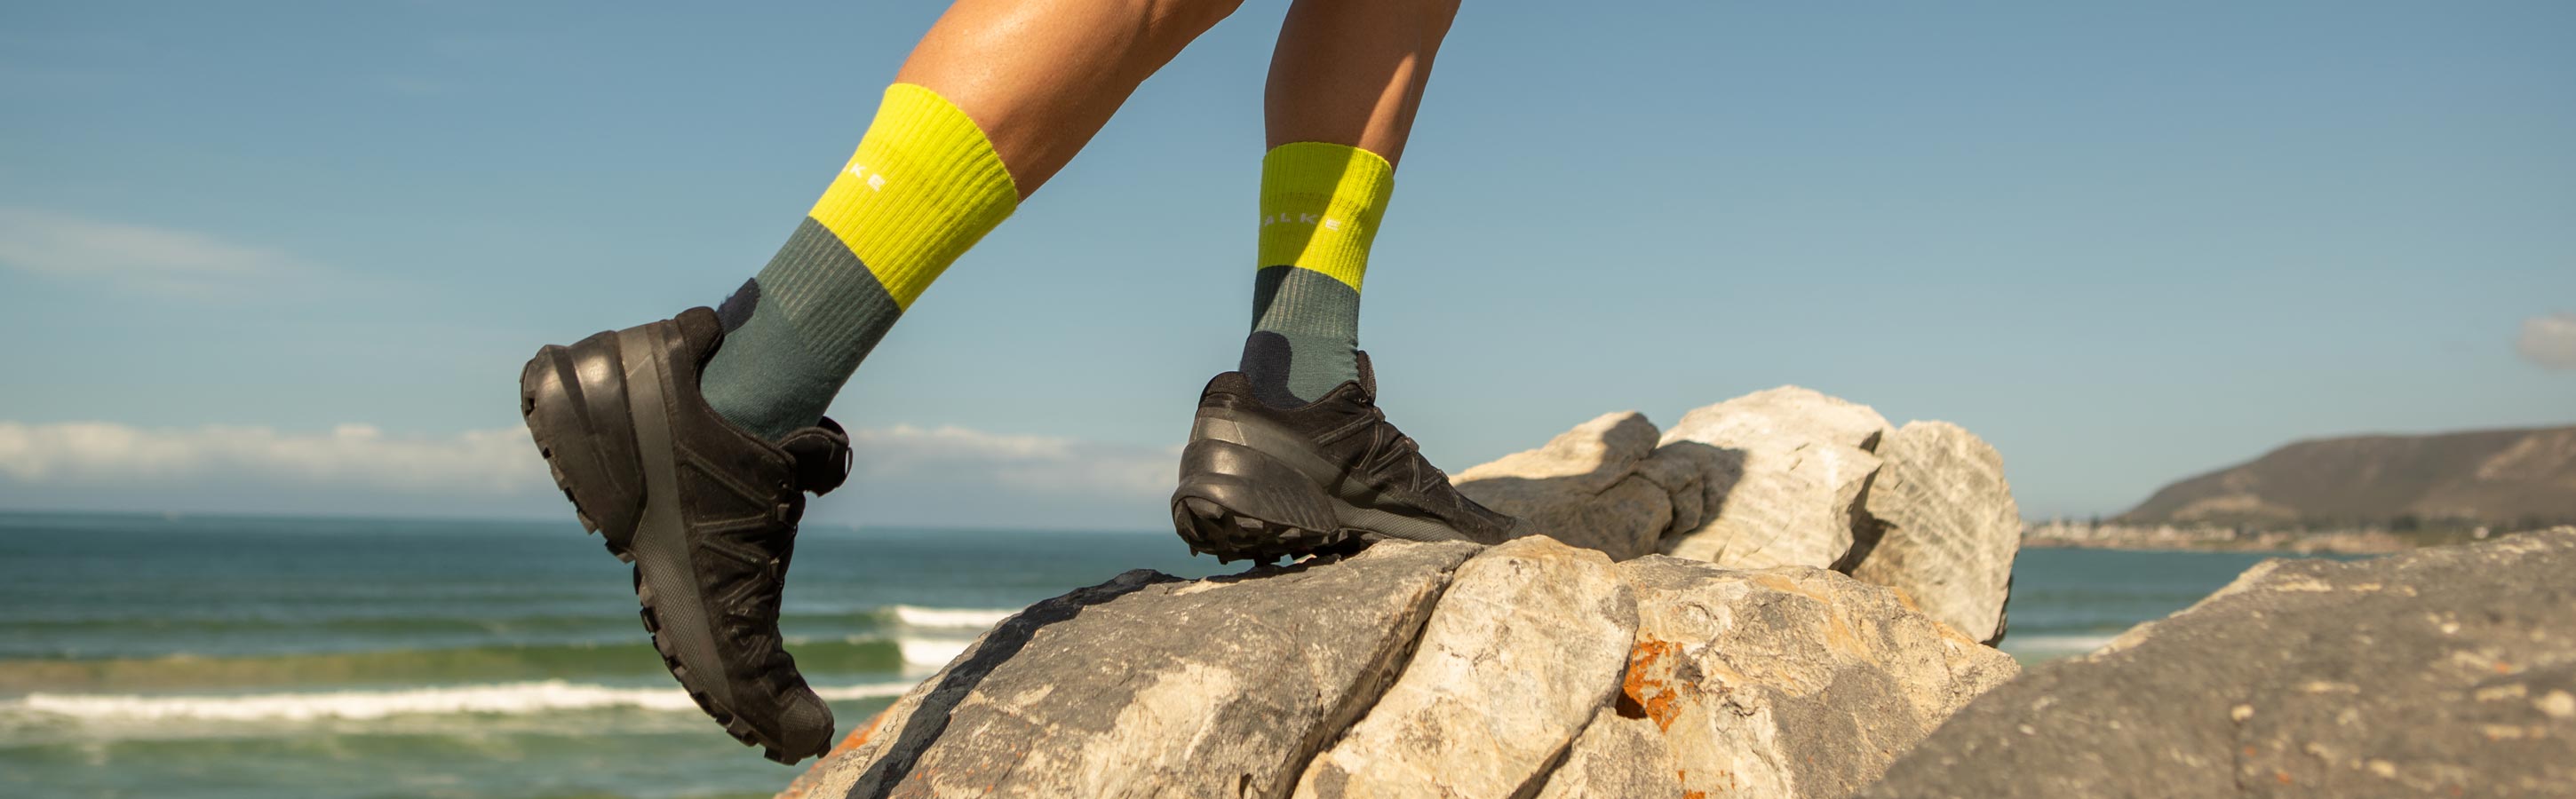 Trekking Socks & Apparel for your next hike | FALKE